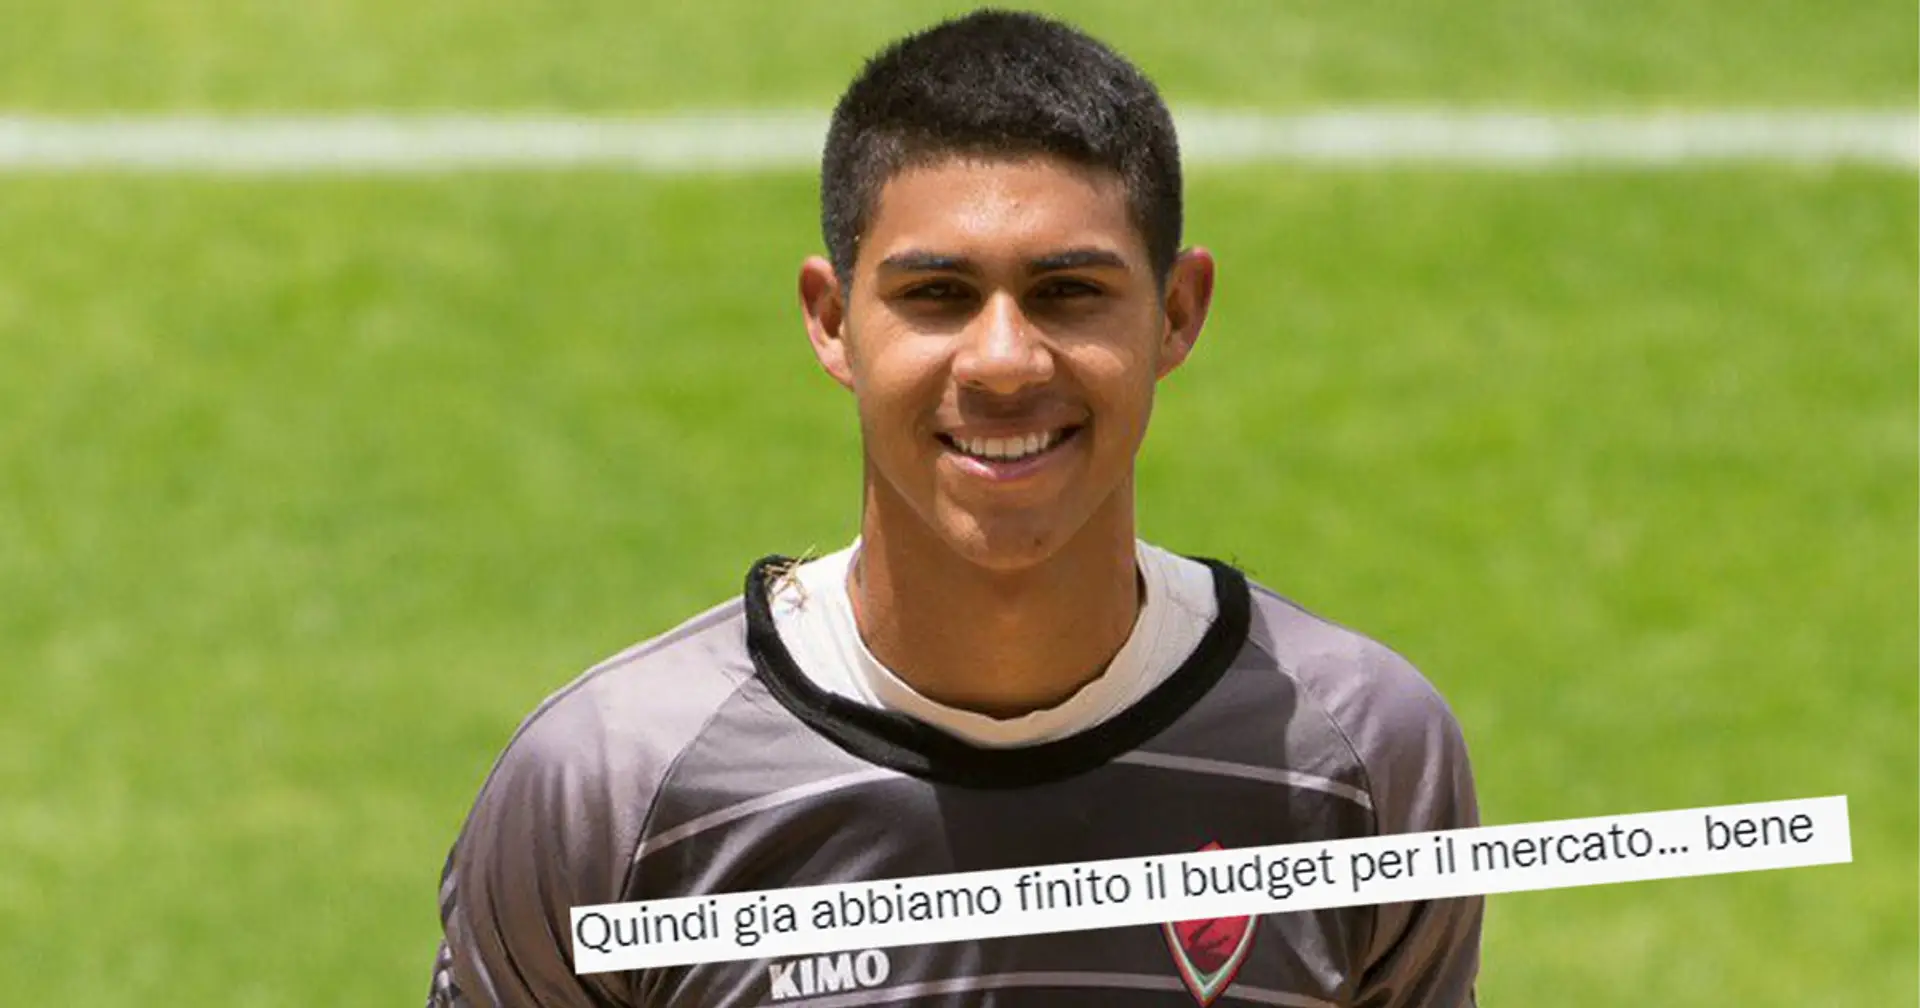 Da "La potenza di Cardinale" a "Finito il budget": l'ironia dei tifosi del Milan sull'investimento per Vasquez